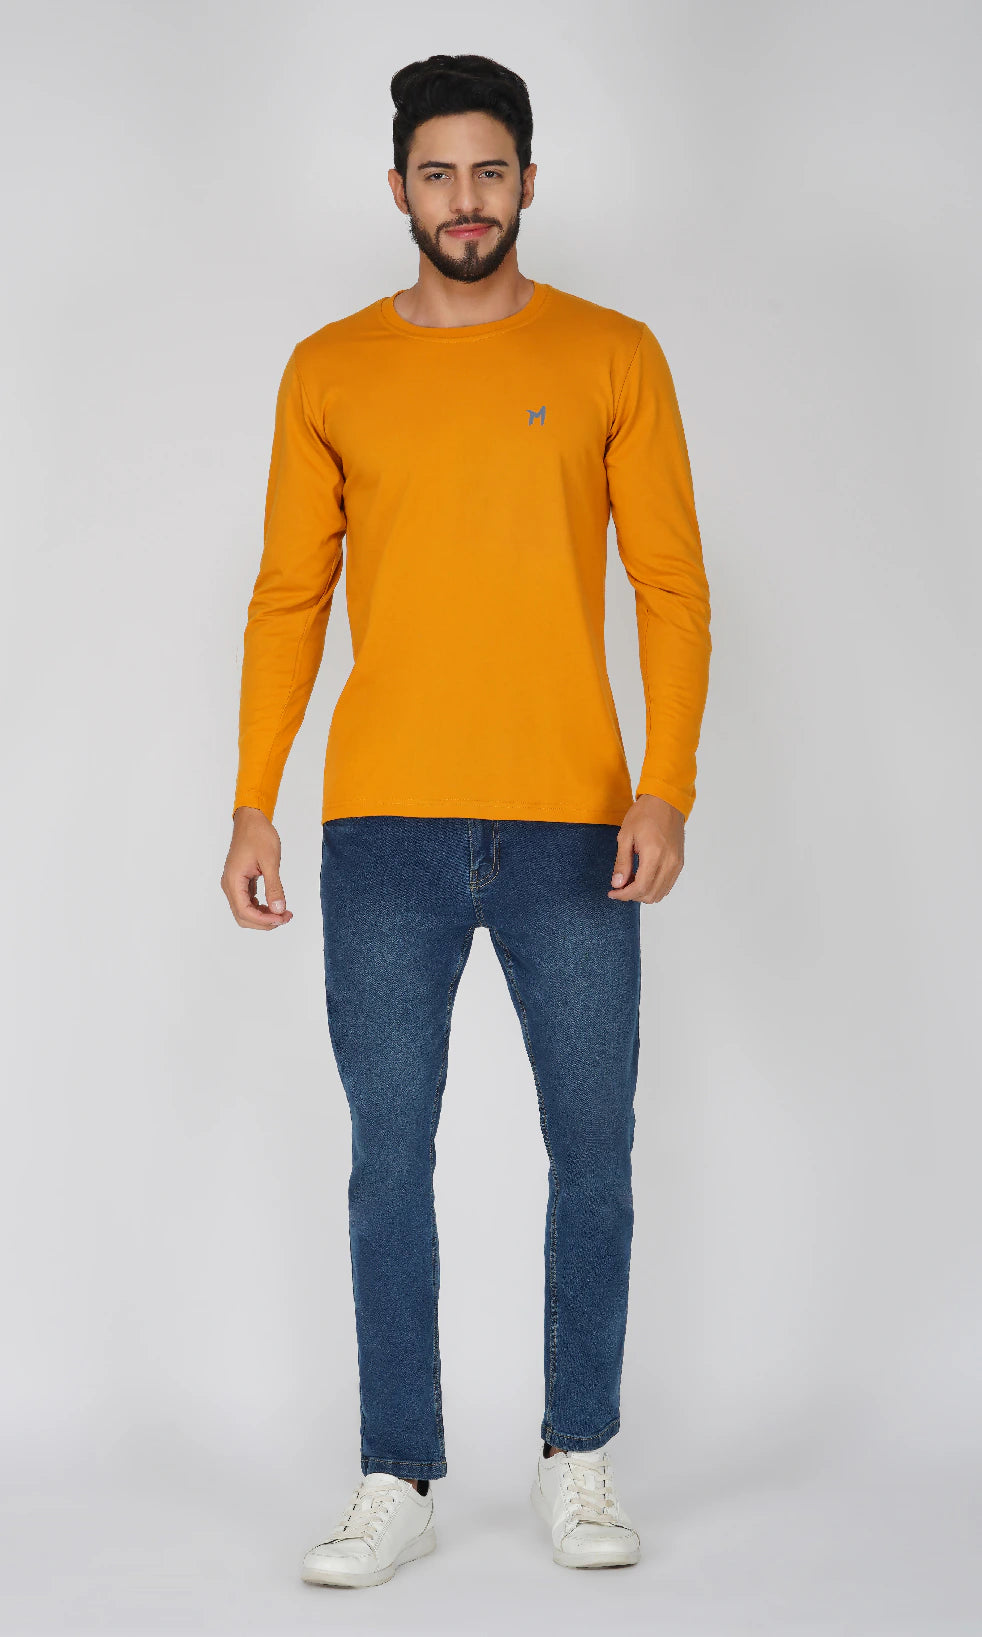 Mebadass Cotton Men's Fullsleeve Regular Size T-shirt - Mustard Yellow